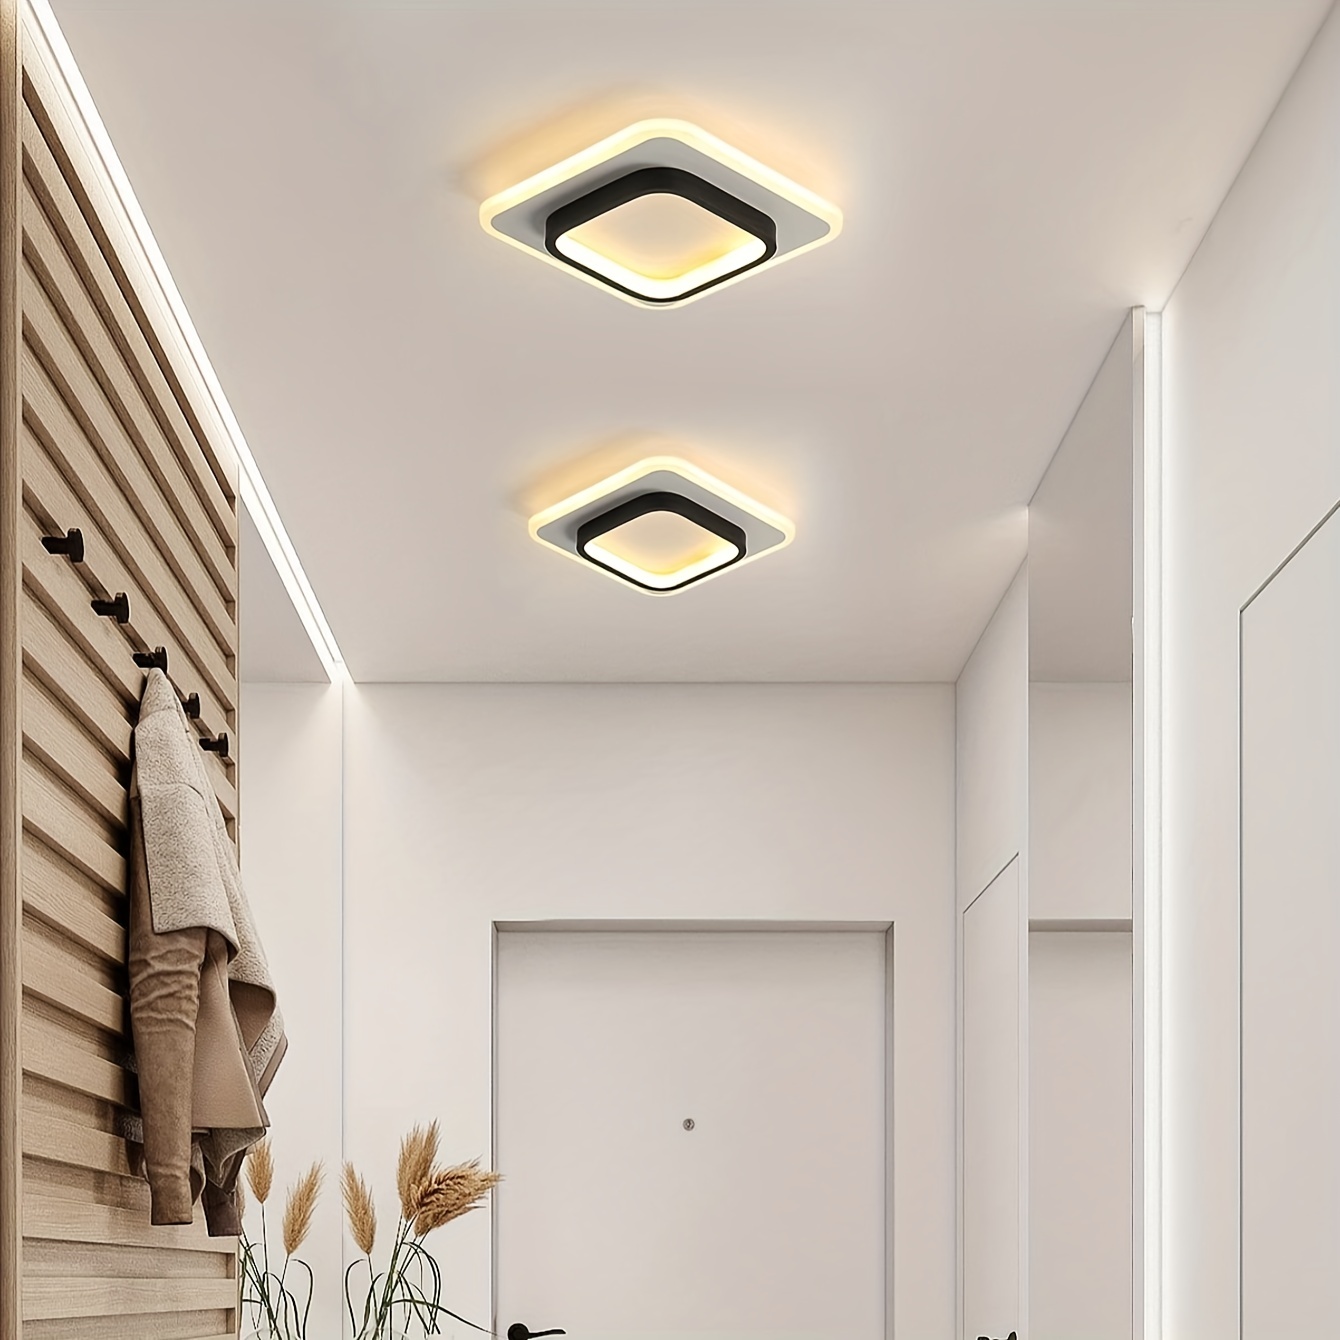 Salle de séjour moderne de la lampe LED simple chambre atmosphérique lampe  de plafond - Chine La lumière au plafond, lampe de la poignée de commande  au plafond